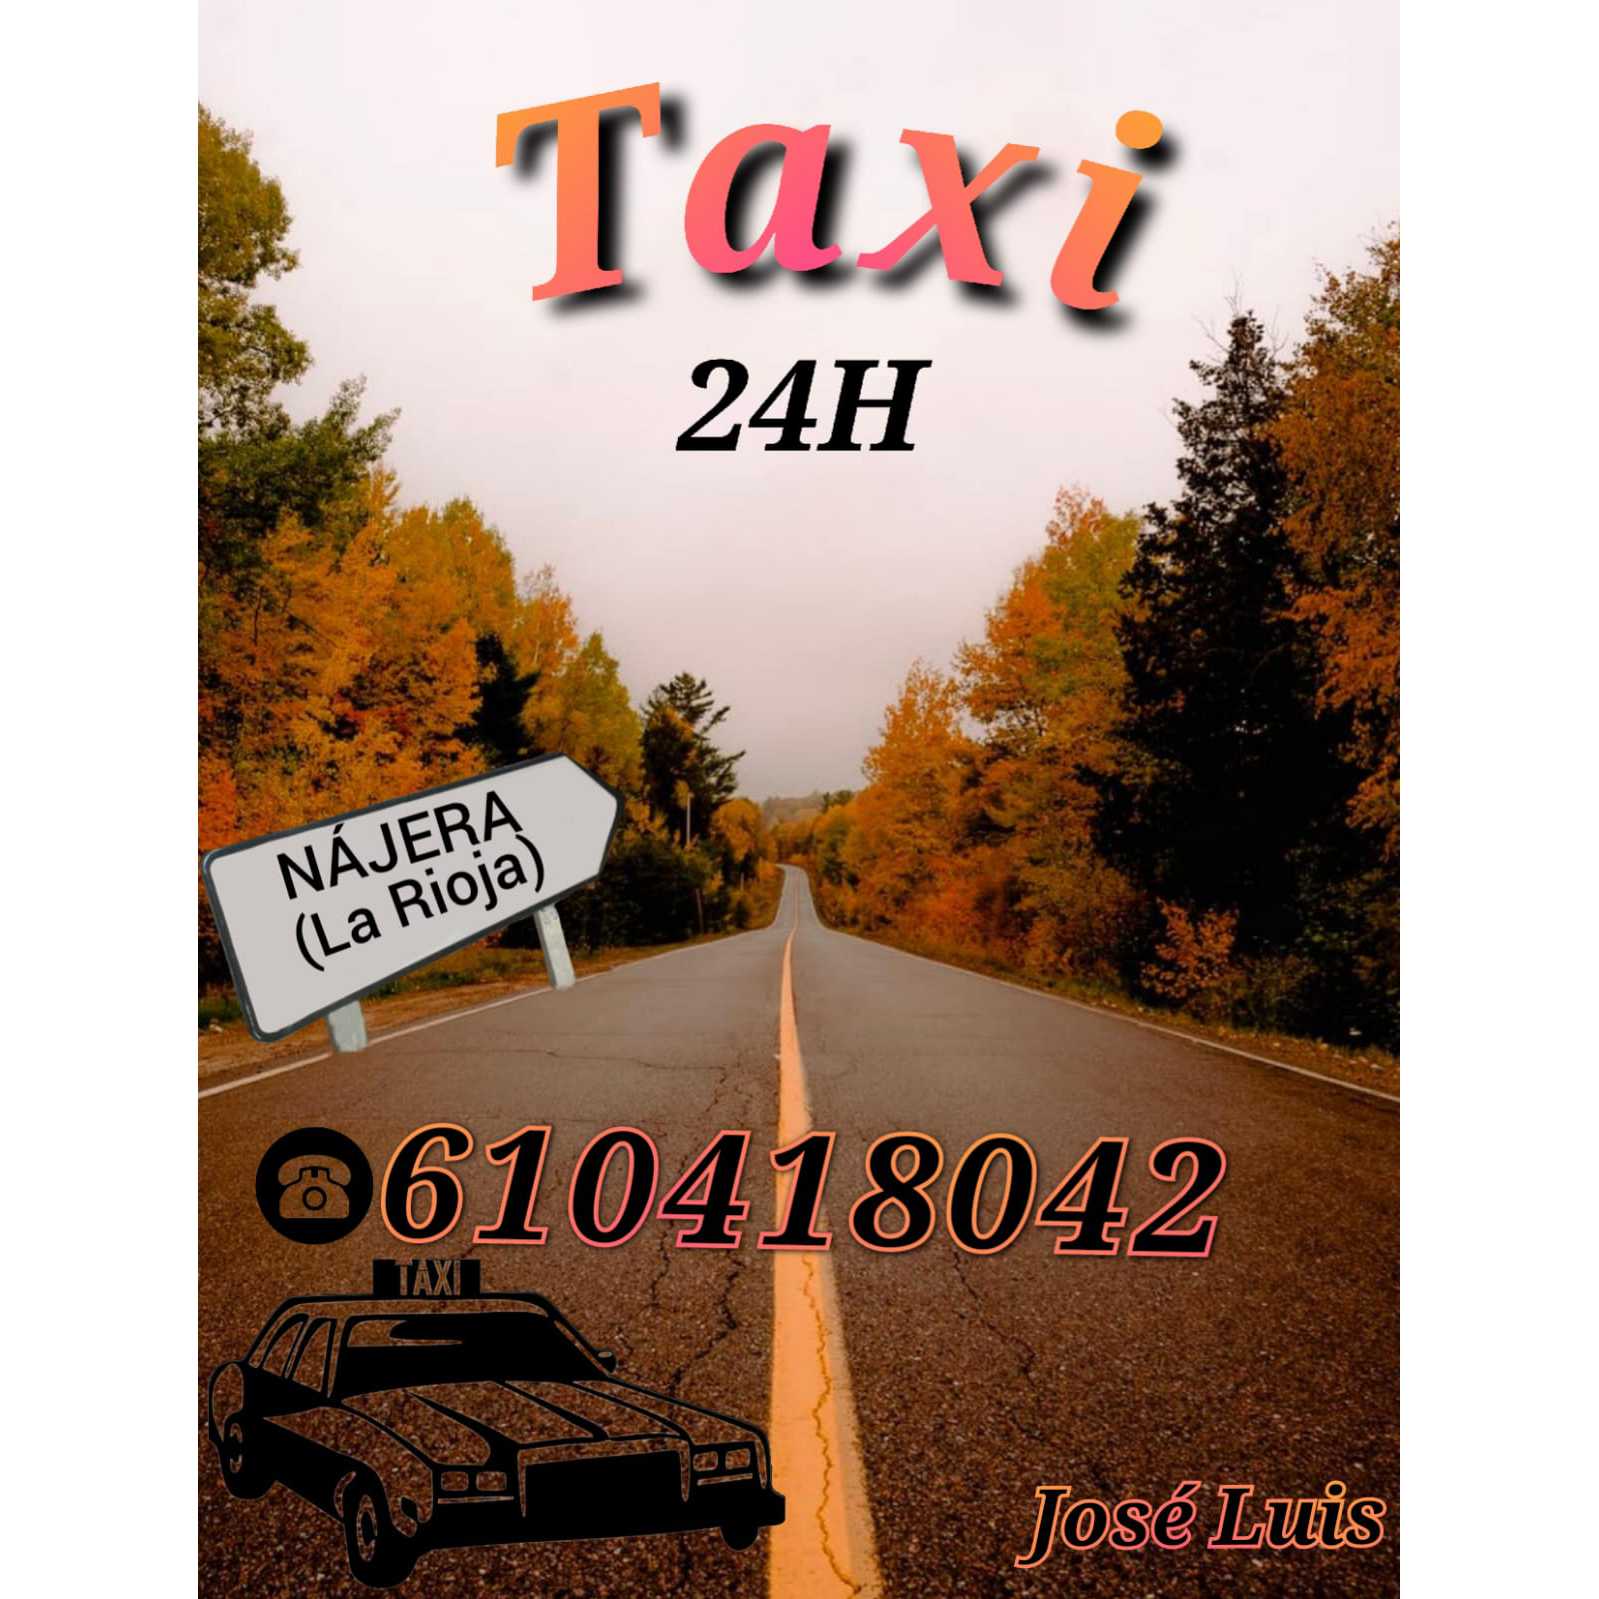 Taxi 24Horas (José Luis) Logo